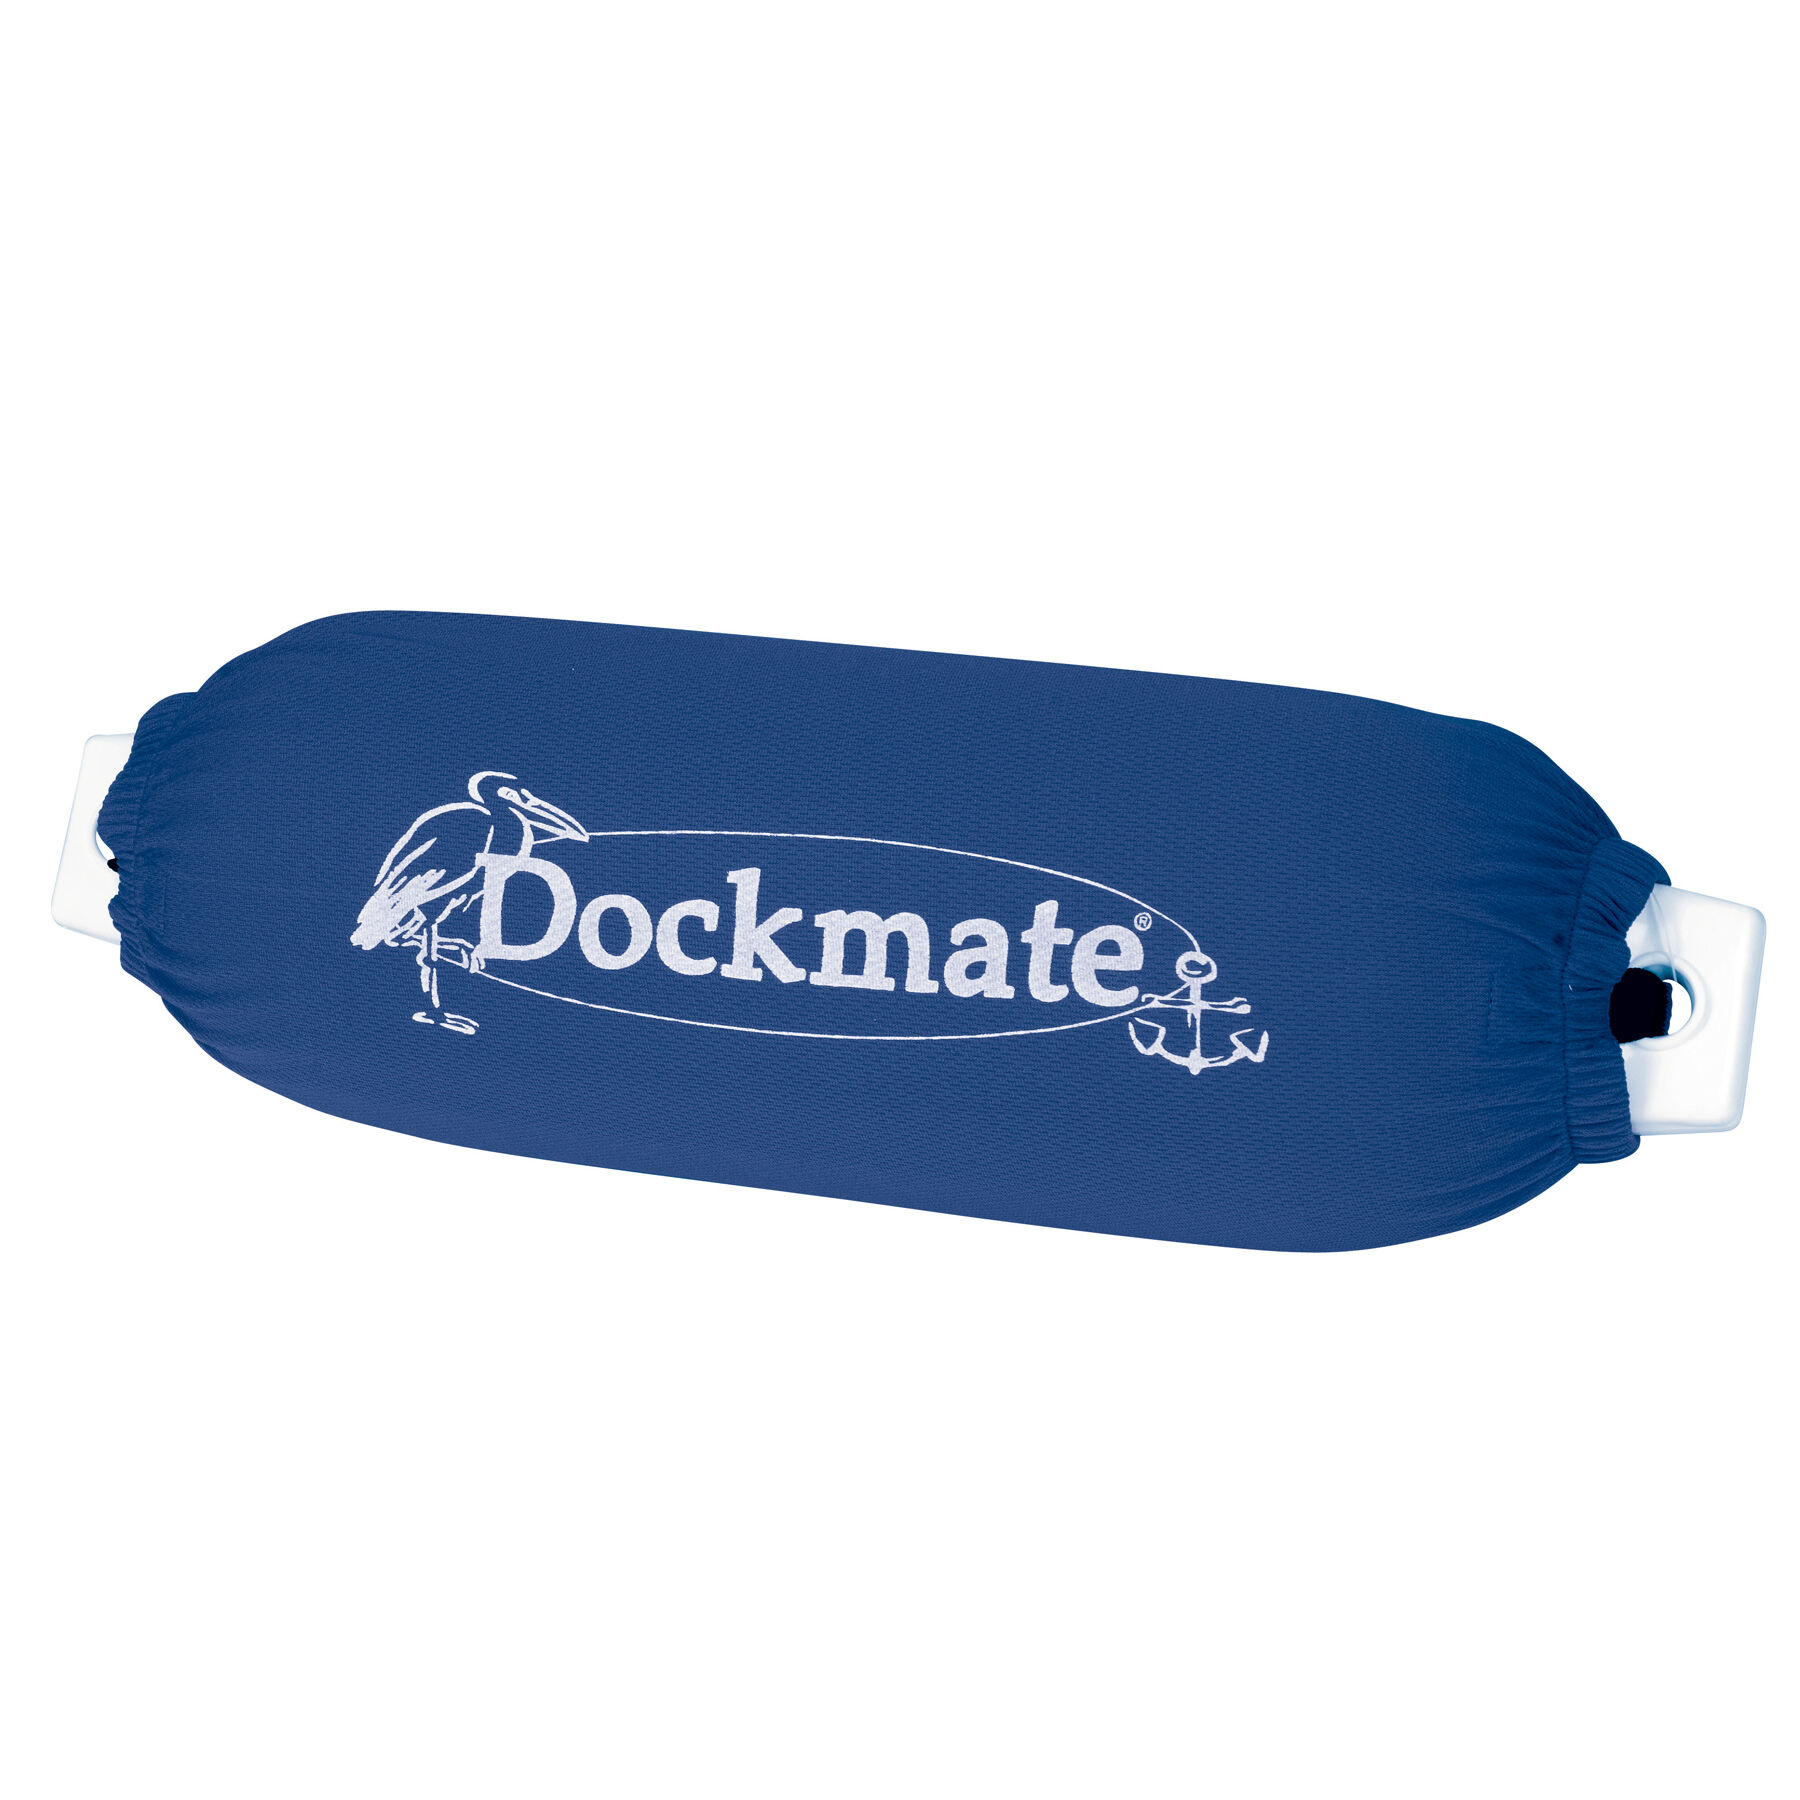 dockmate rafting fenders